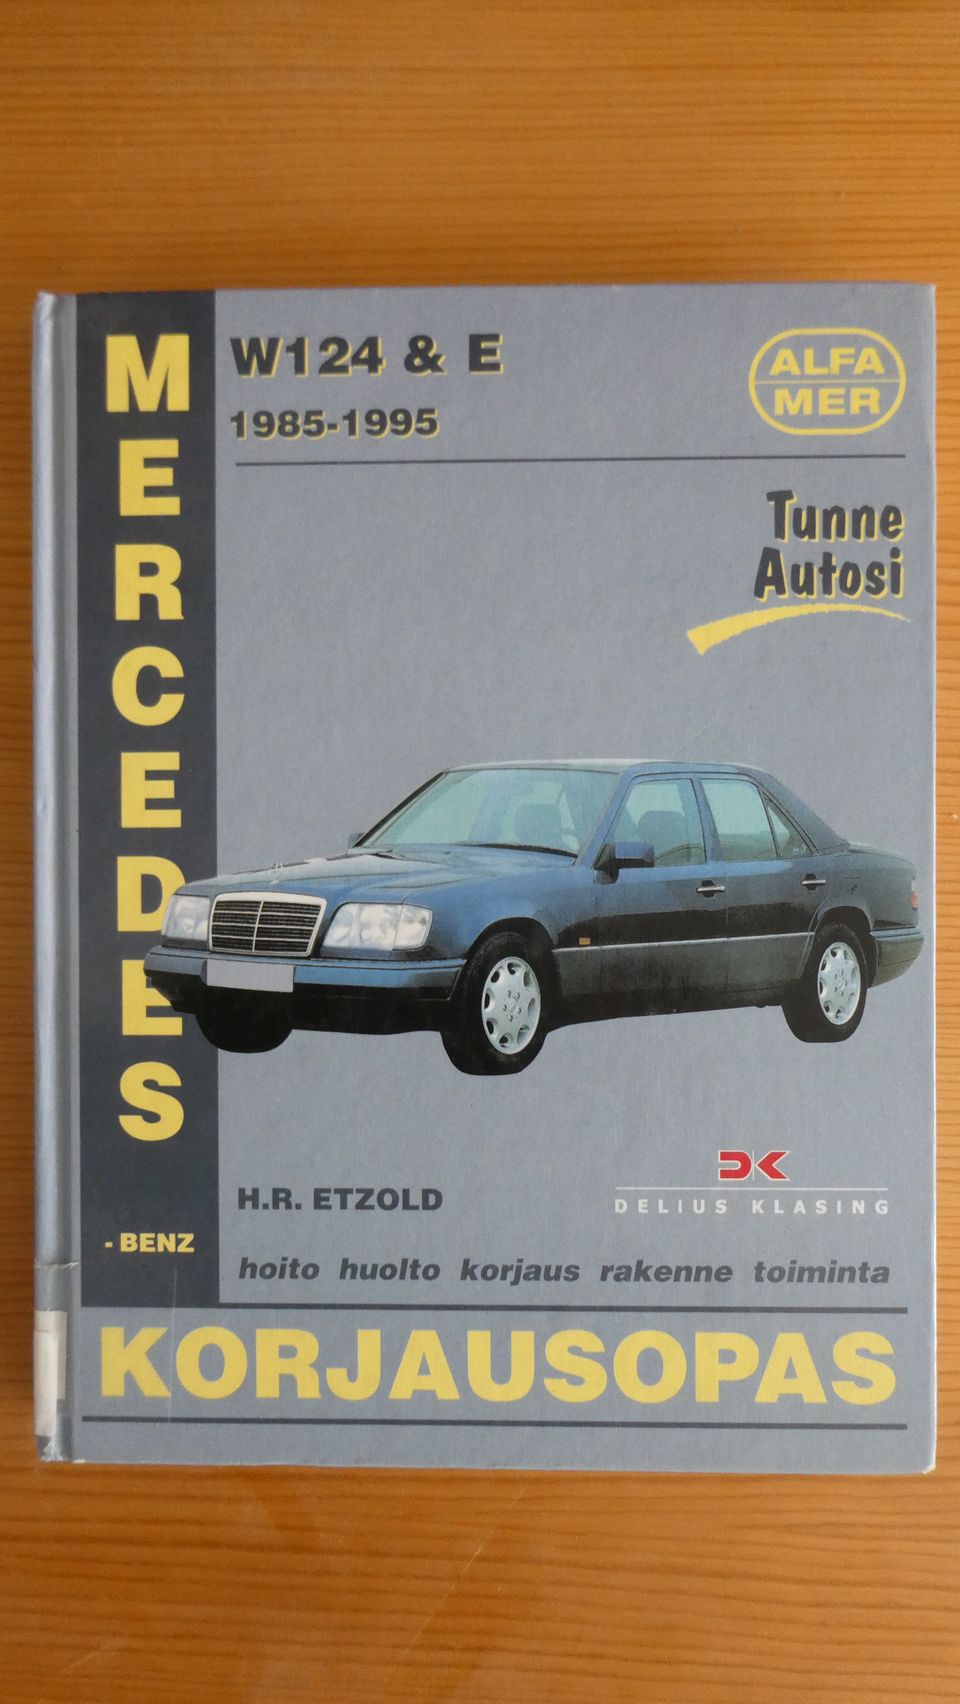 Alfamer korjausopas Mercedes - Benz 124 ja E 1985 - 1995